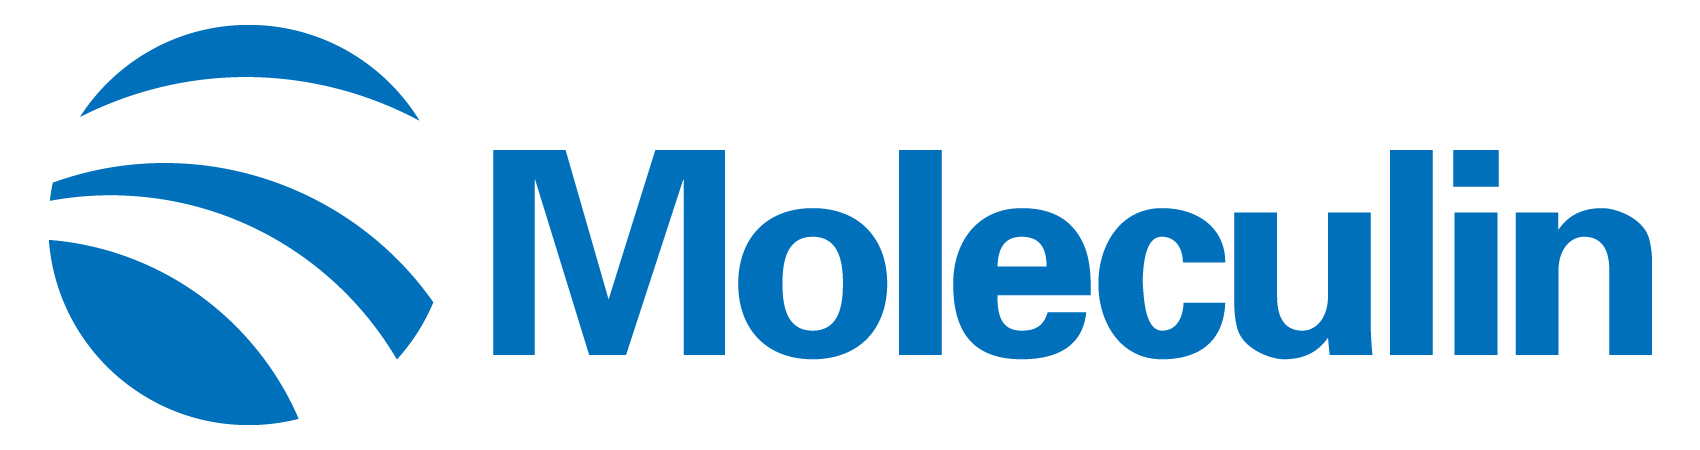 moleculin-logoa02.jpg